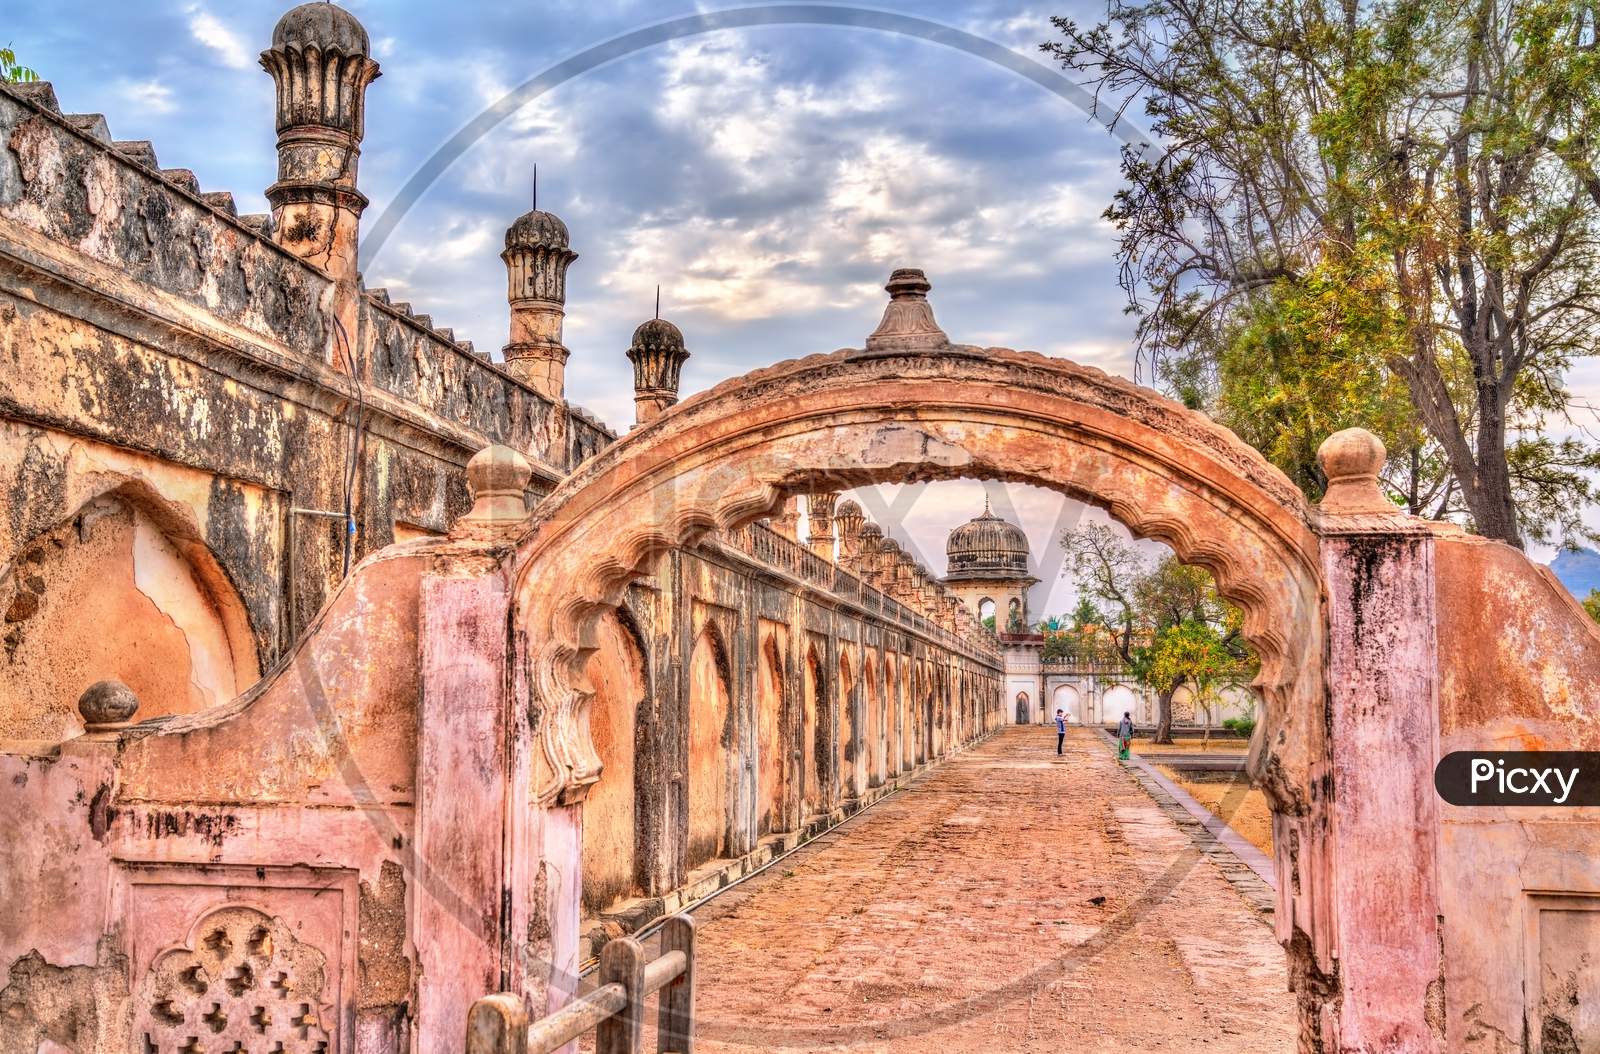 Walls Of Bibi Ka Maqbara, Also Known As Mini Taj Mahal. Aurangabad, India